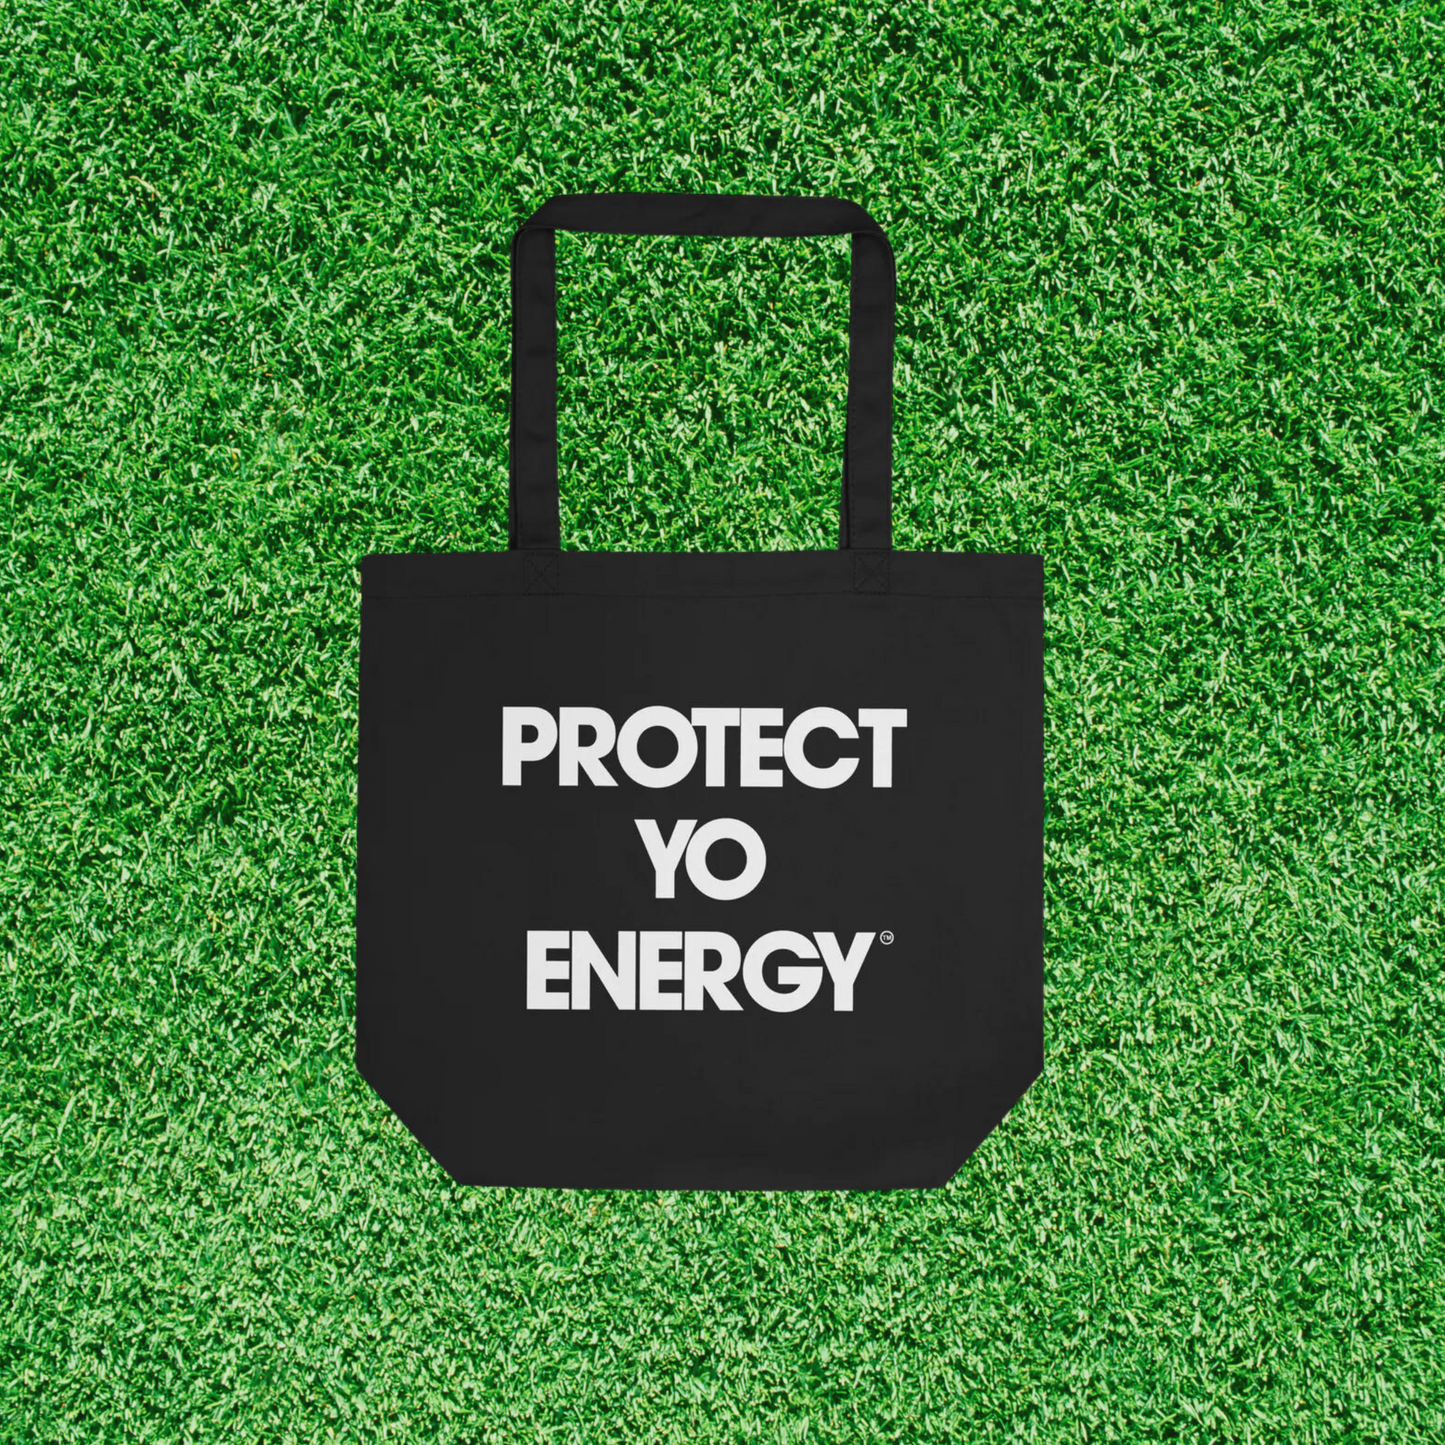 PYE Eco Tote Bag - PROTECT YO ENERGY 